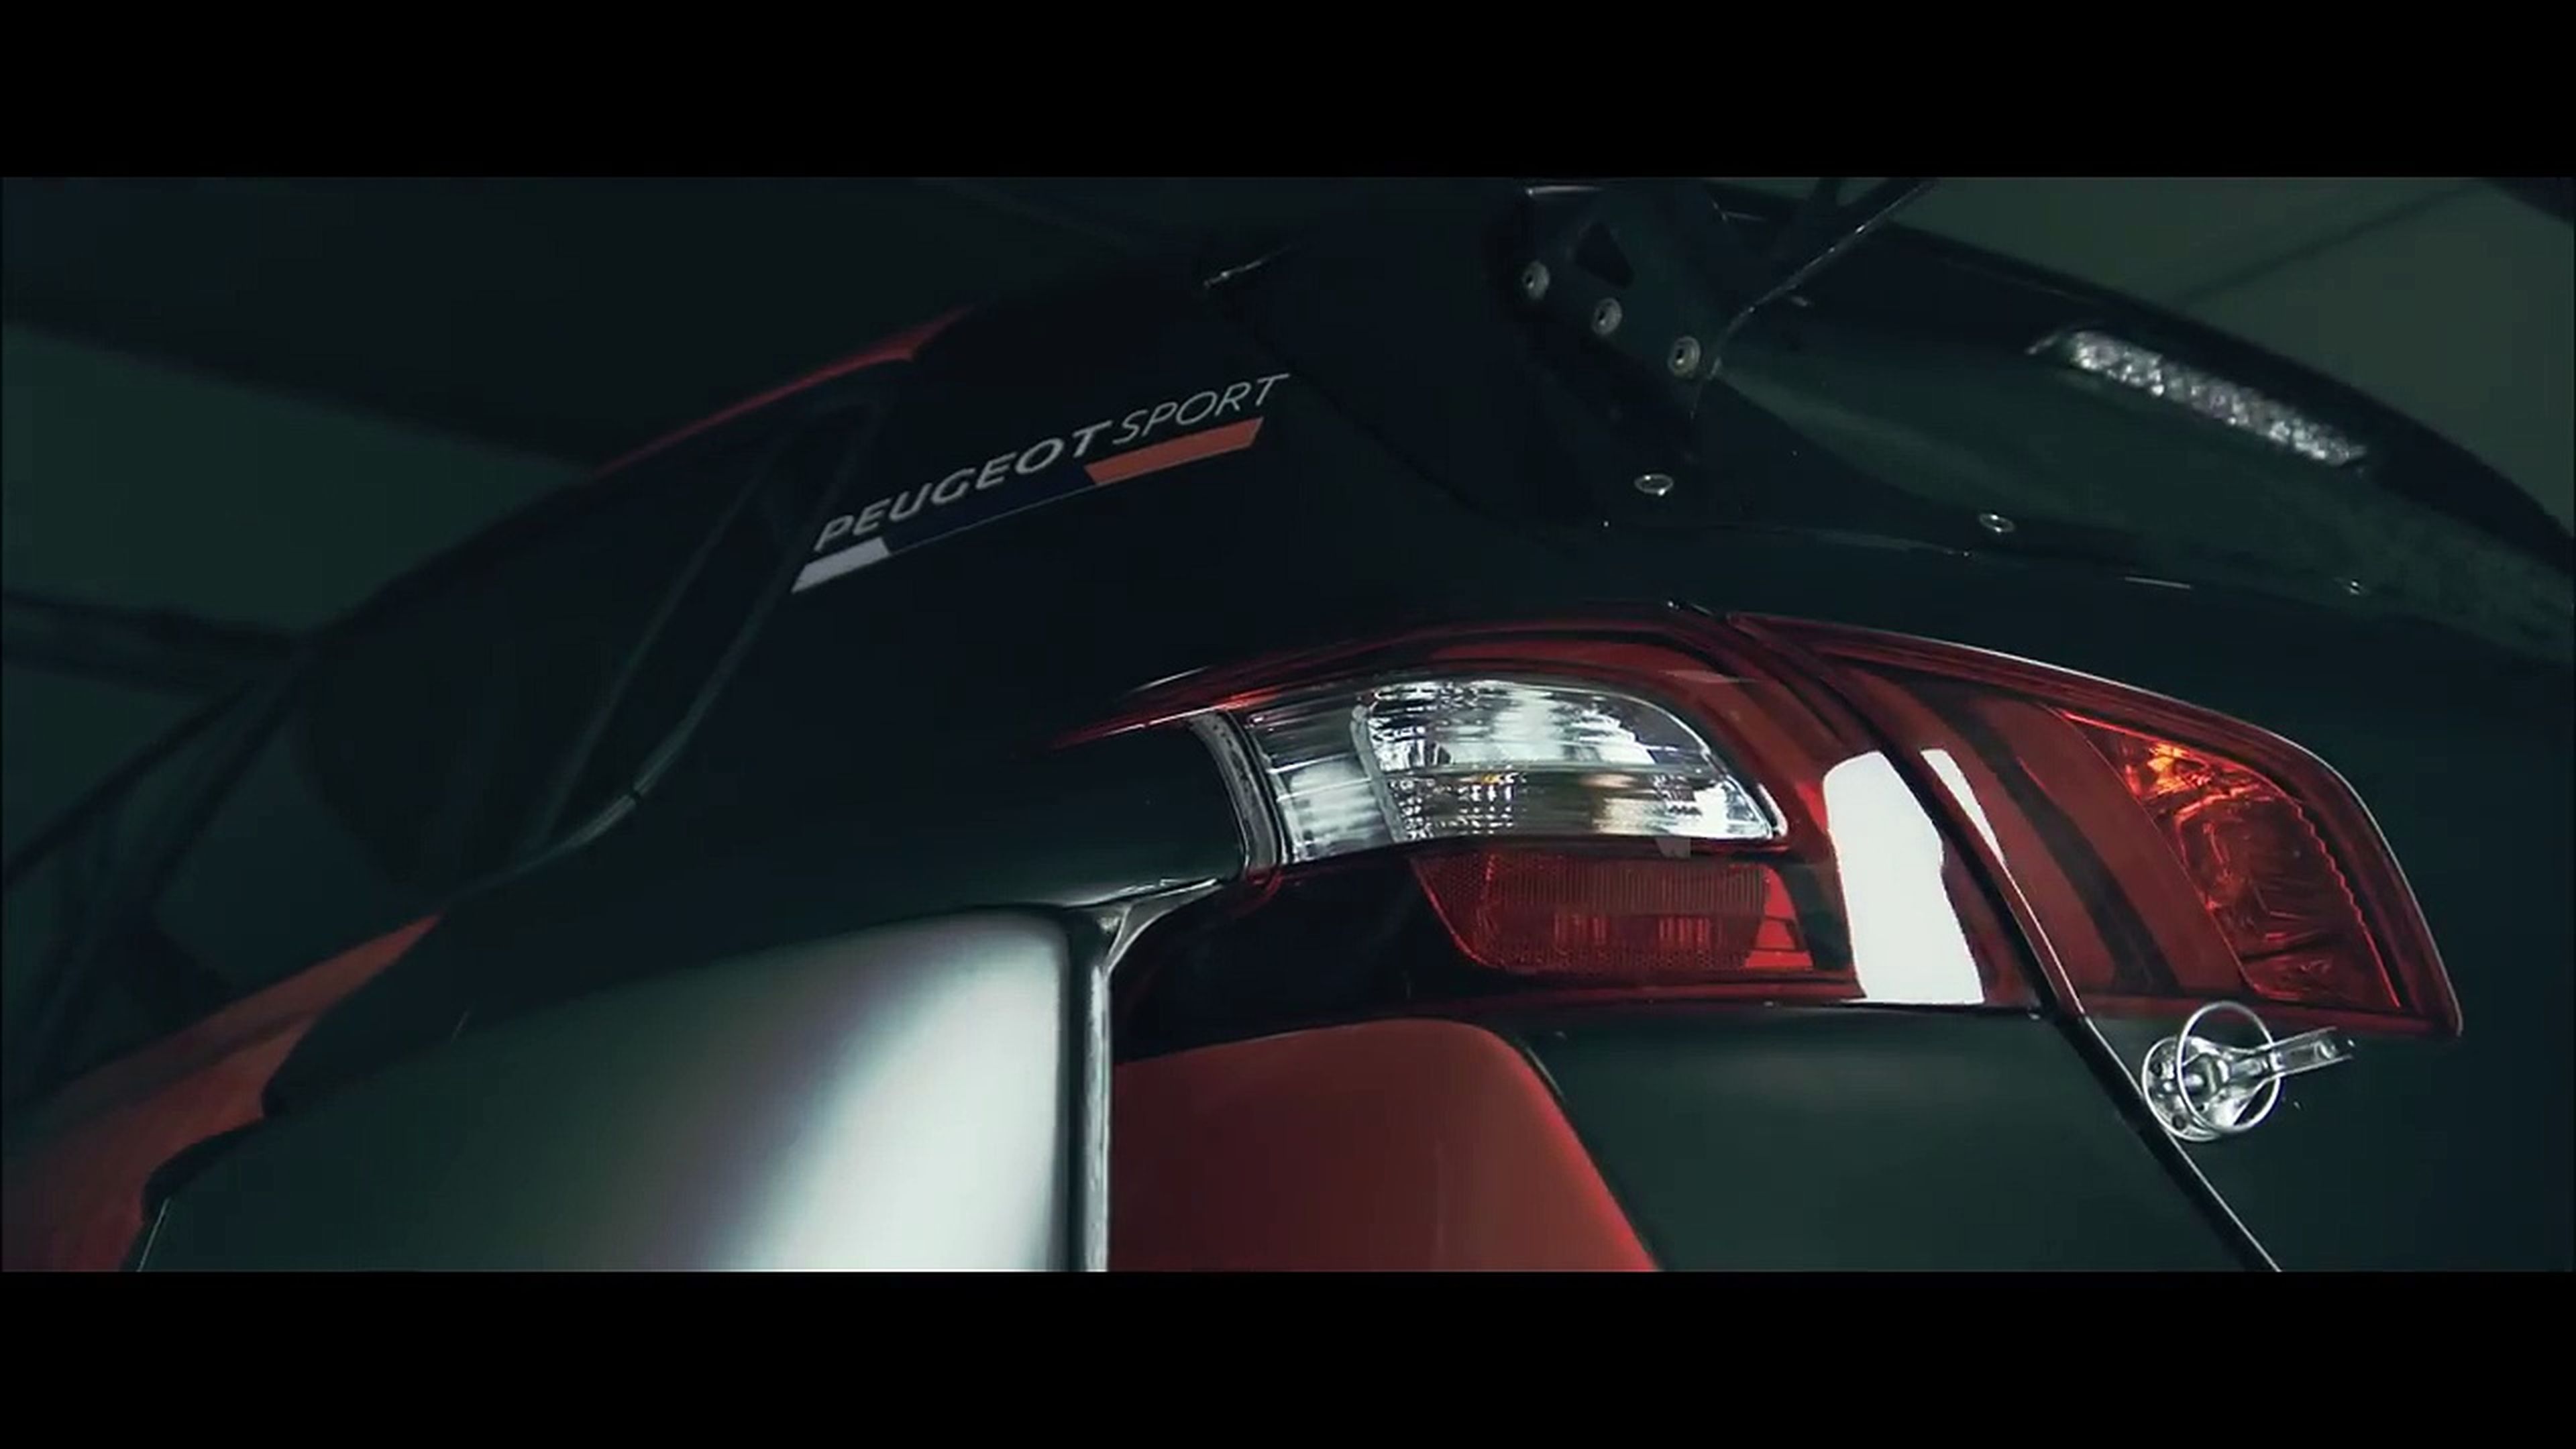 VÍDEO: Peugeot 308 TCR, ¿preparado para acción de la buena?